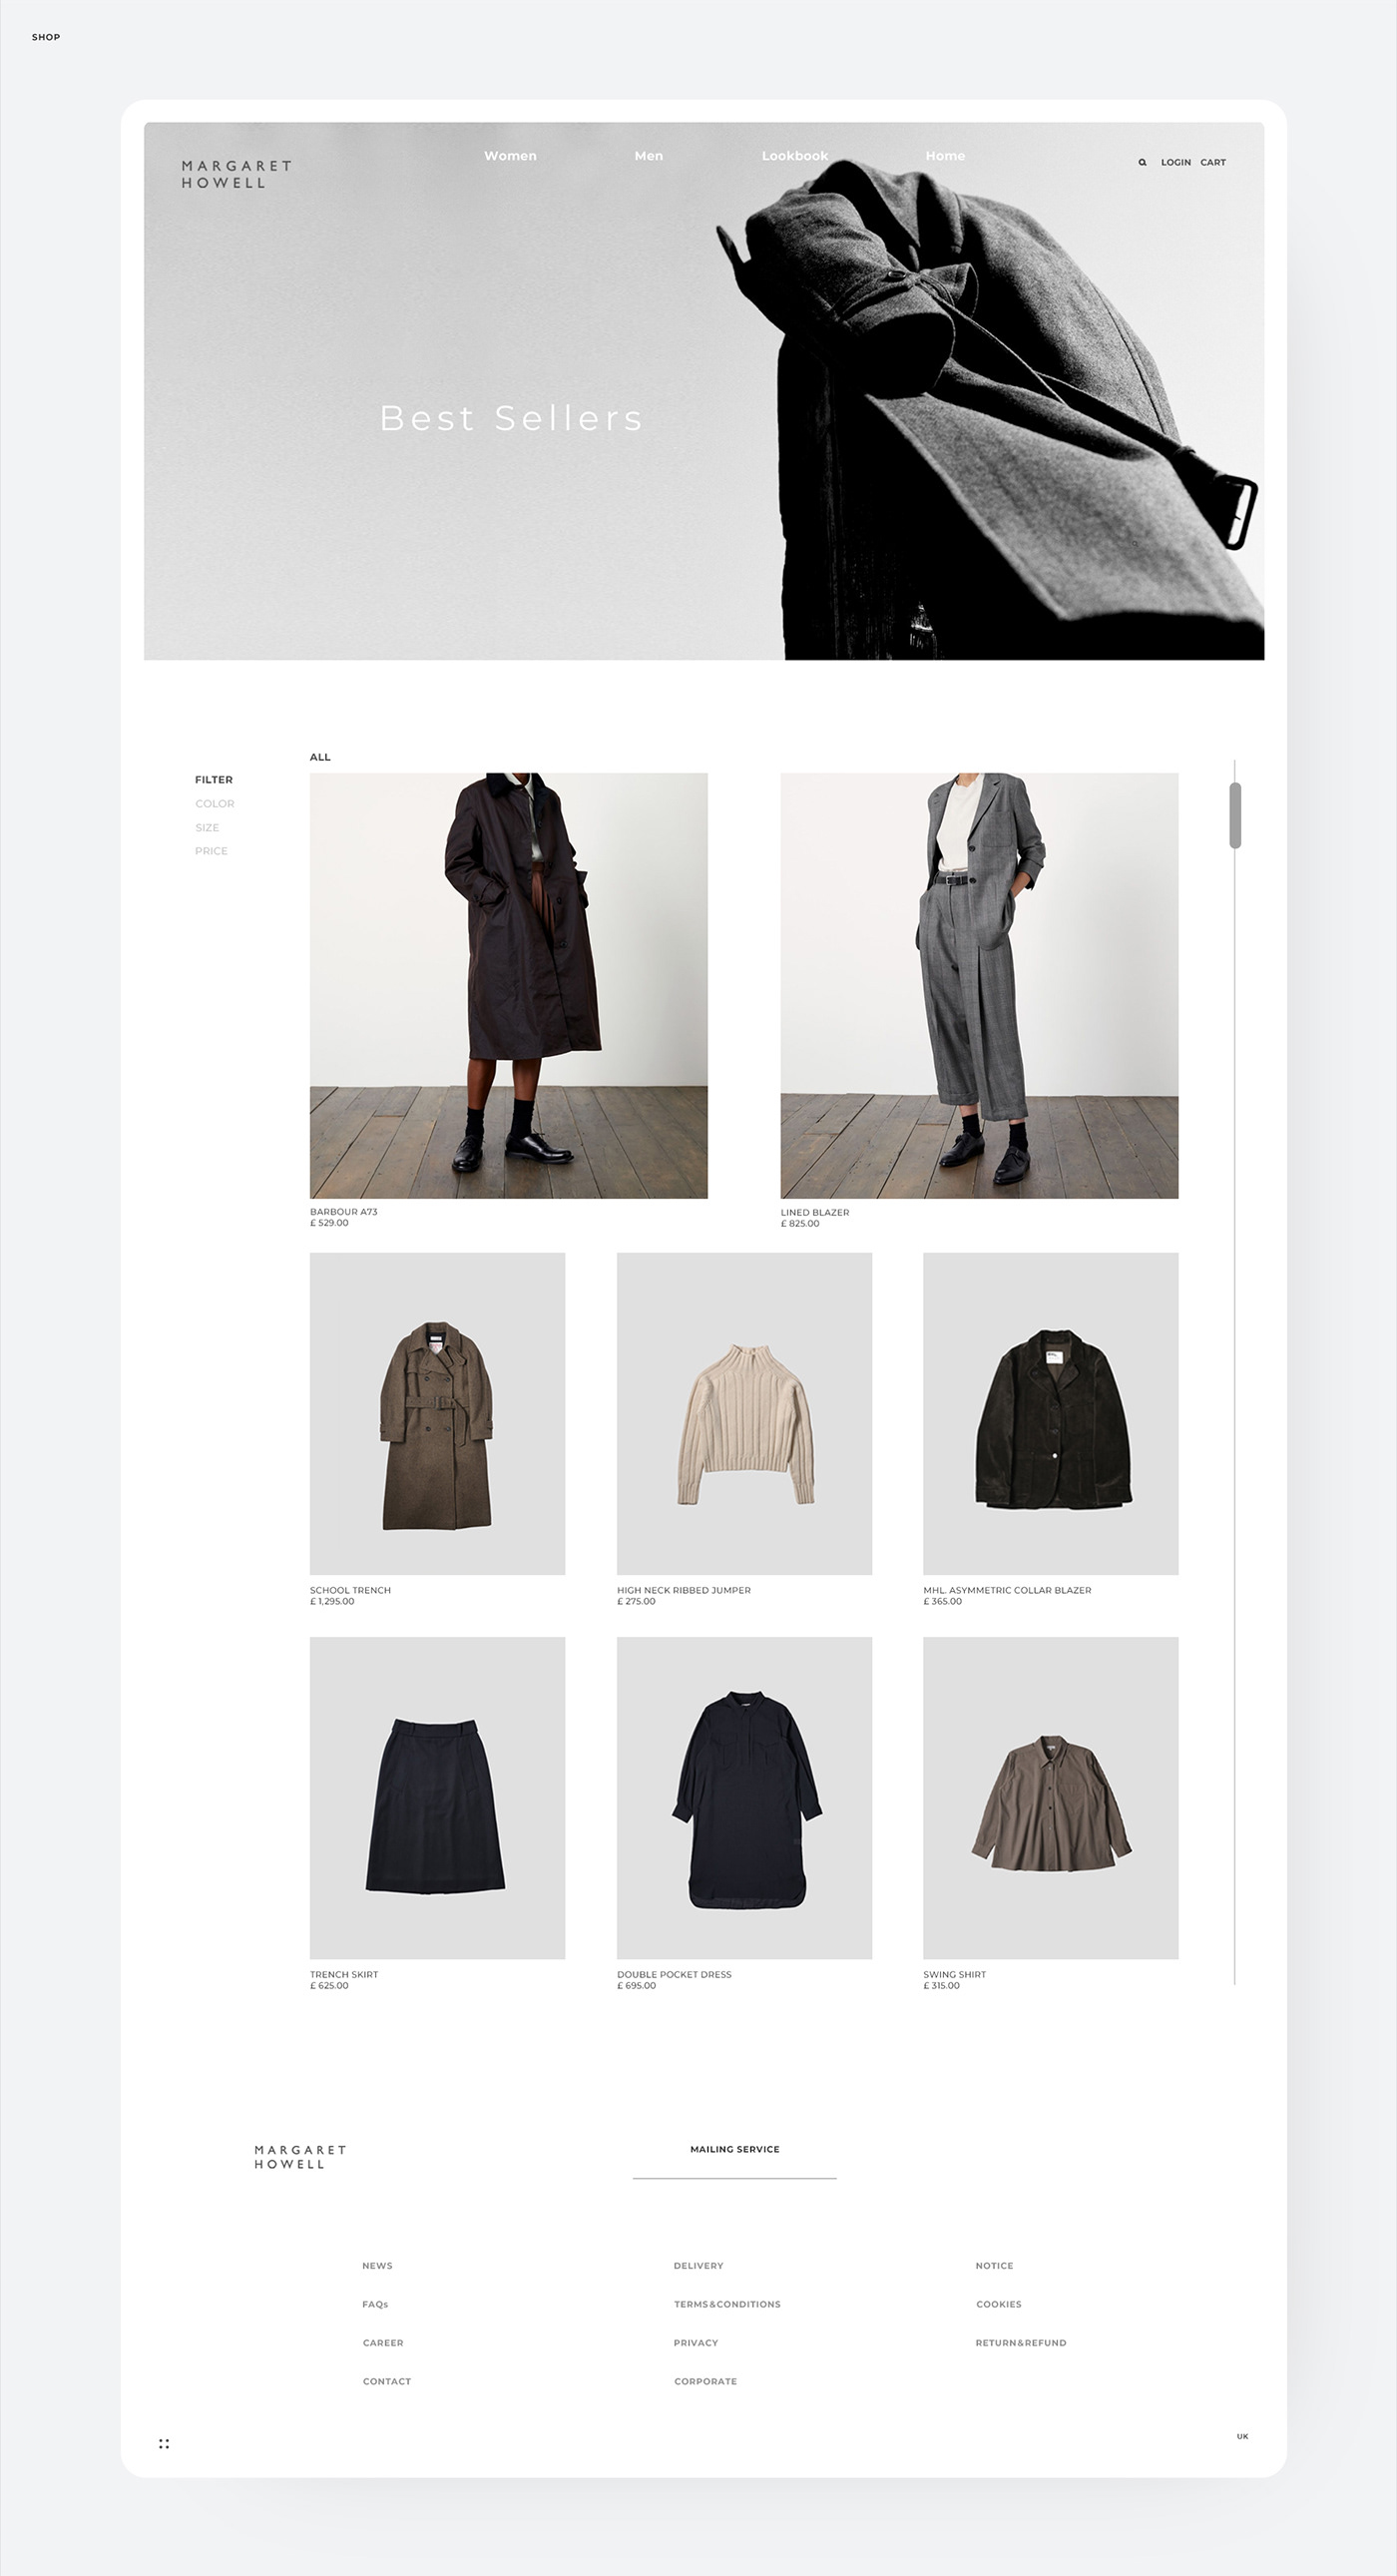 Clothing Fashion  interaction margarethowell MHL minimal Style uxui Webdesign womenwear